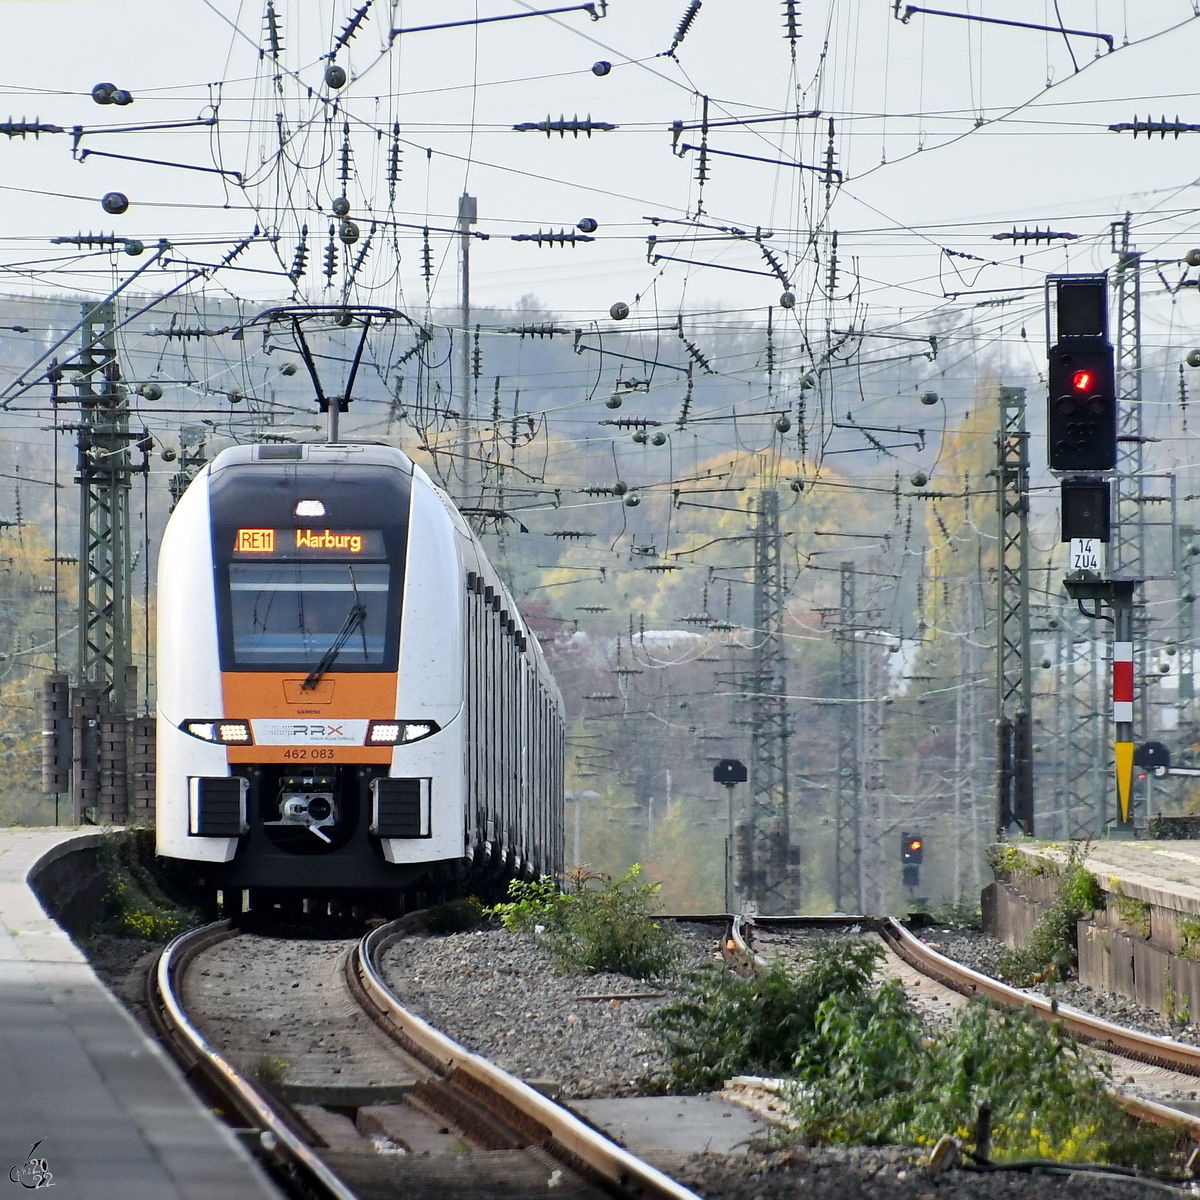 Der Elektrotriebzug 462 083 ist als RE11 nach Warburg unterwegs und hier Ende Oktober 2022 bei der Ankunft am Bochumer Hauptbahnhof zu sehen.